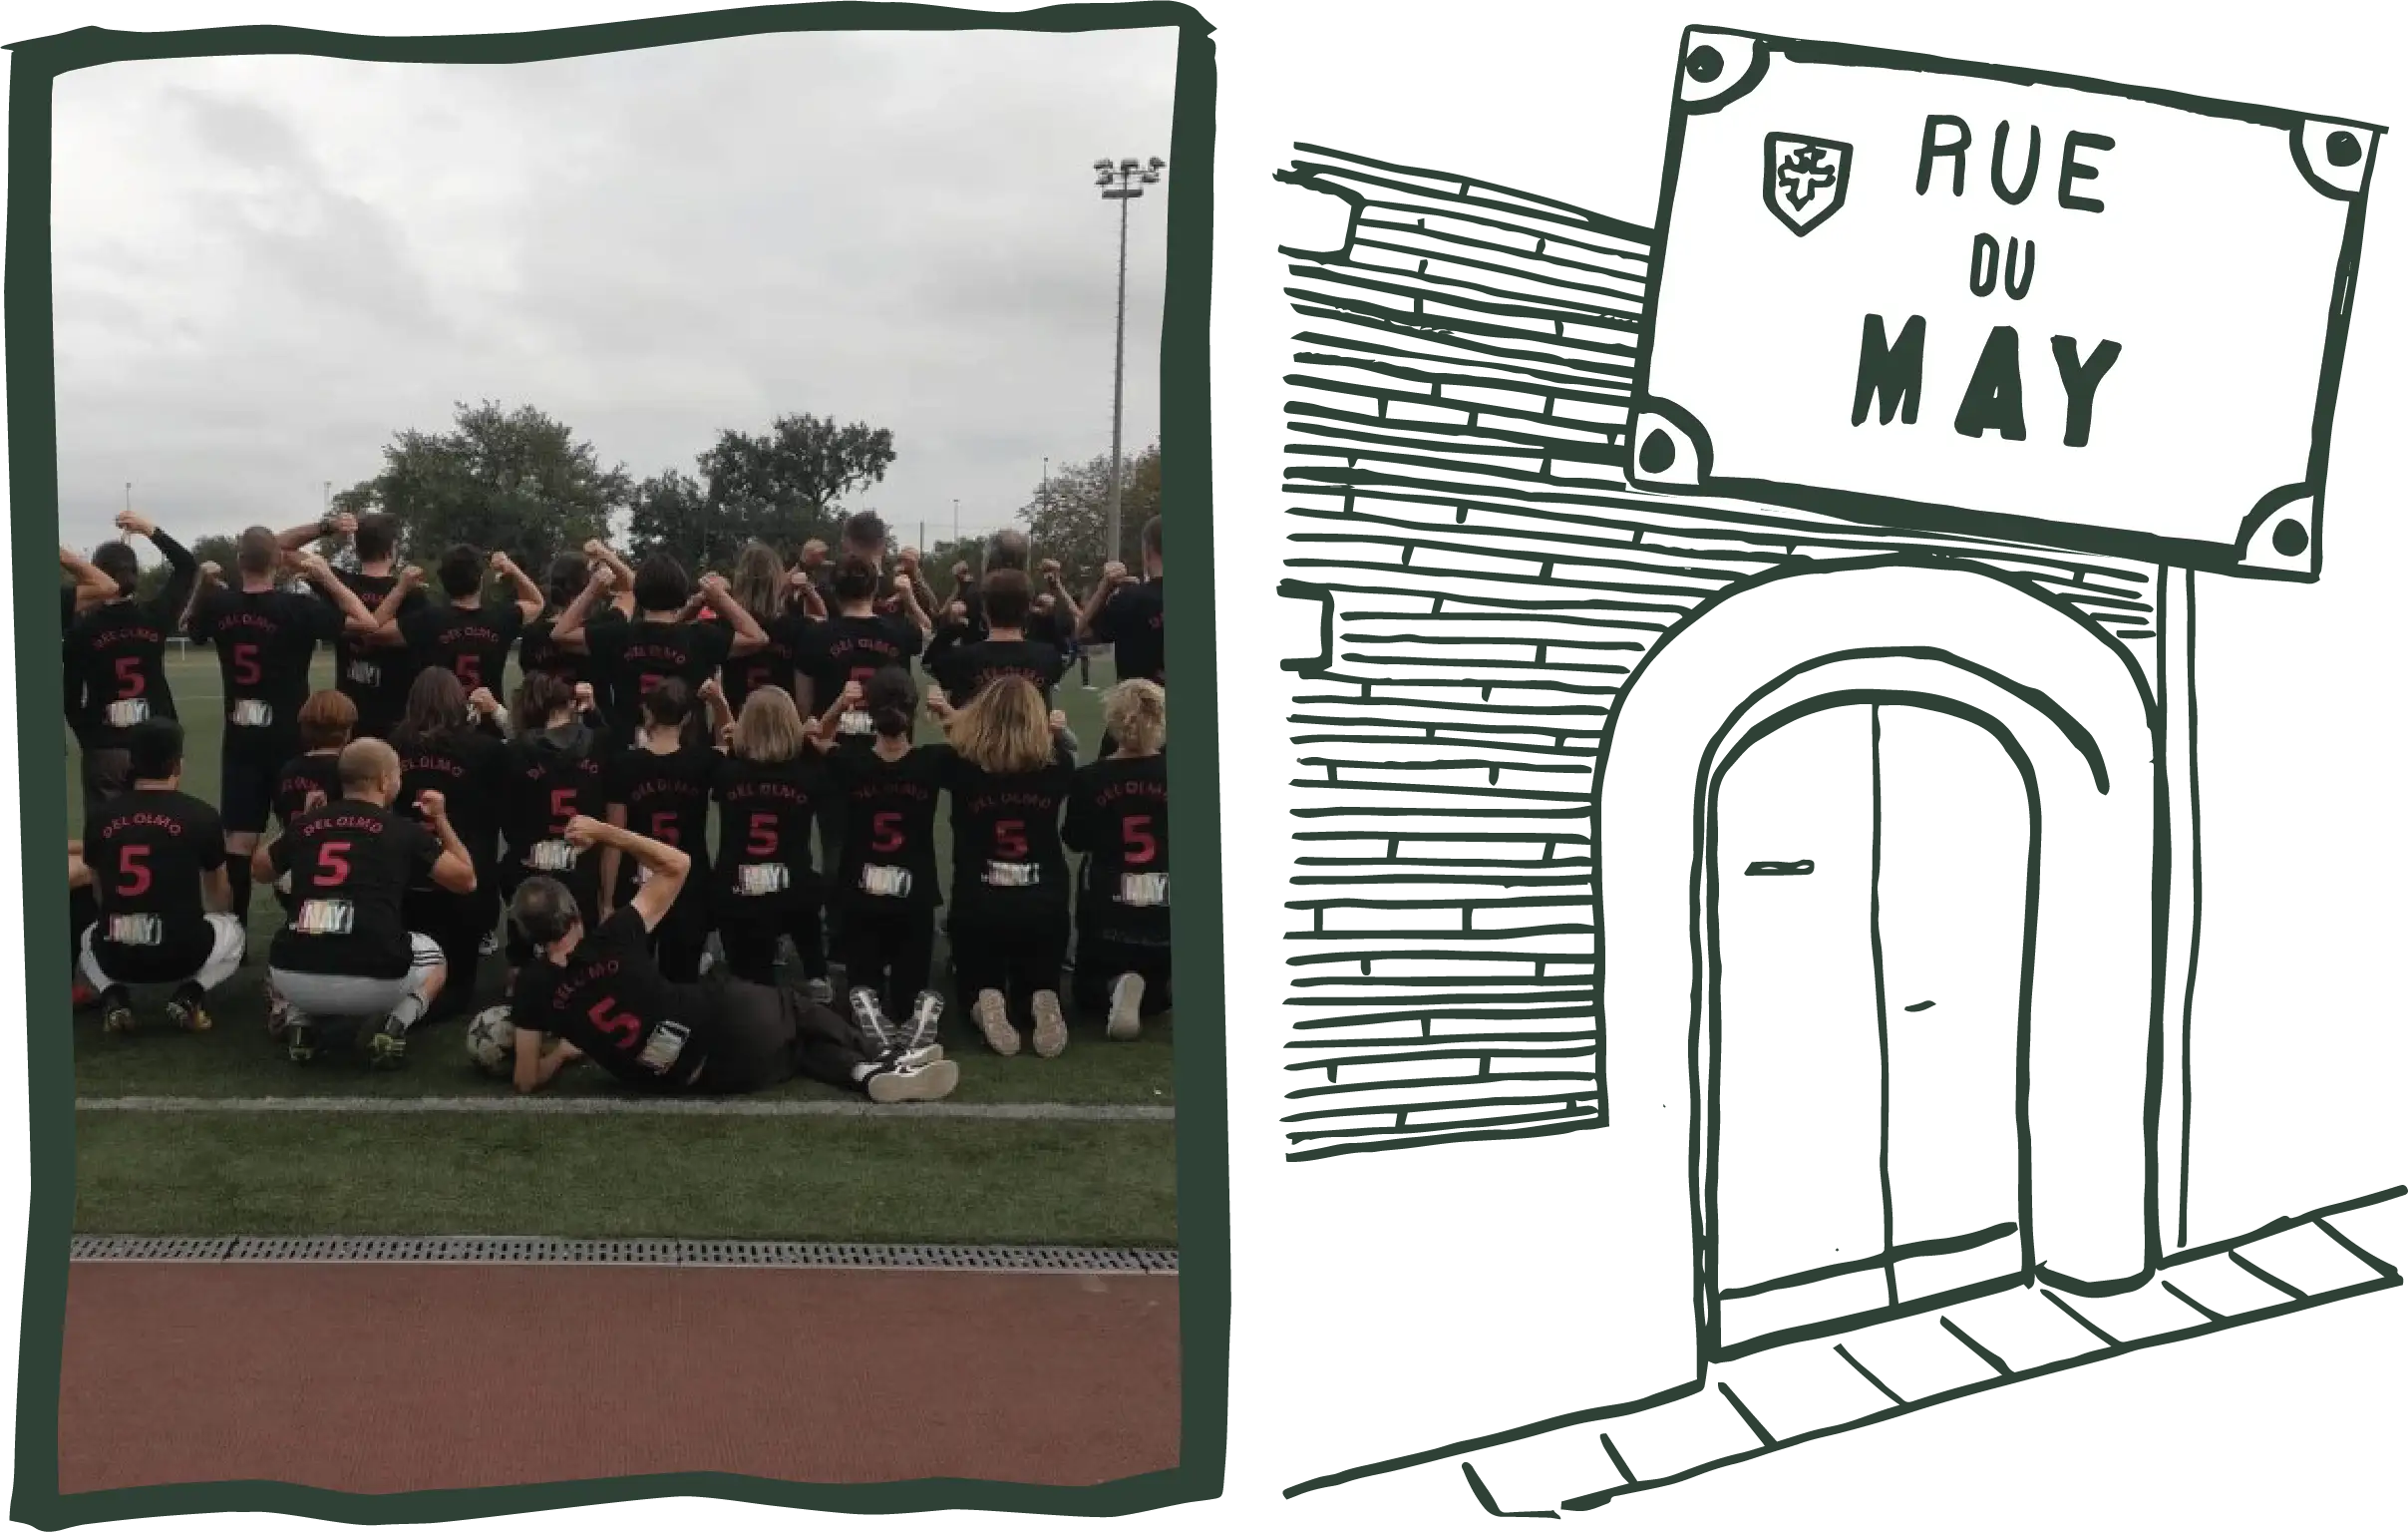 Sur la gauche photo de l'équipe de l'association du May de doc avec des maillots sur un terrain de foot. Sur la droite un dessin au trait vert fonçè de la porte d'entrée du siège social de l'association avec la plaque de la rue du May.